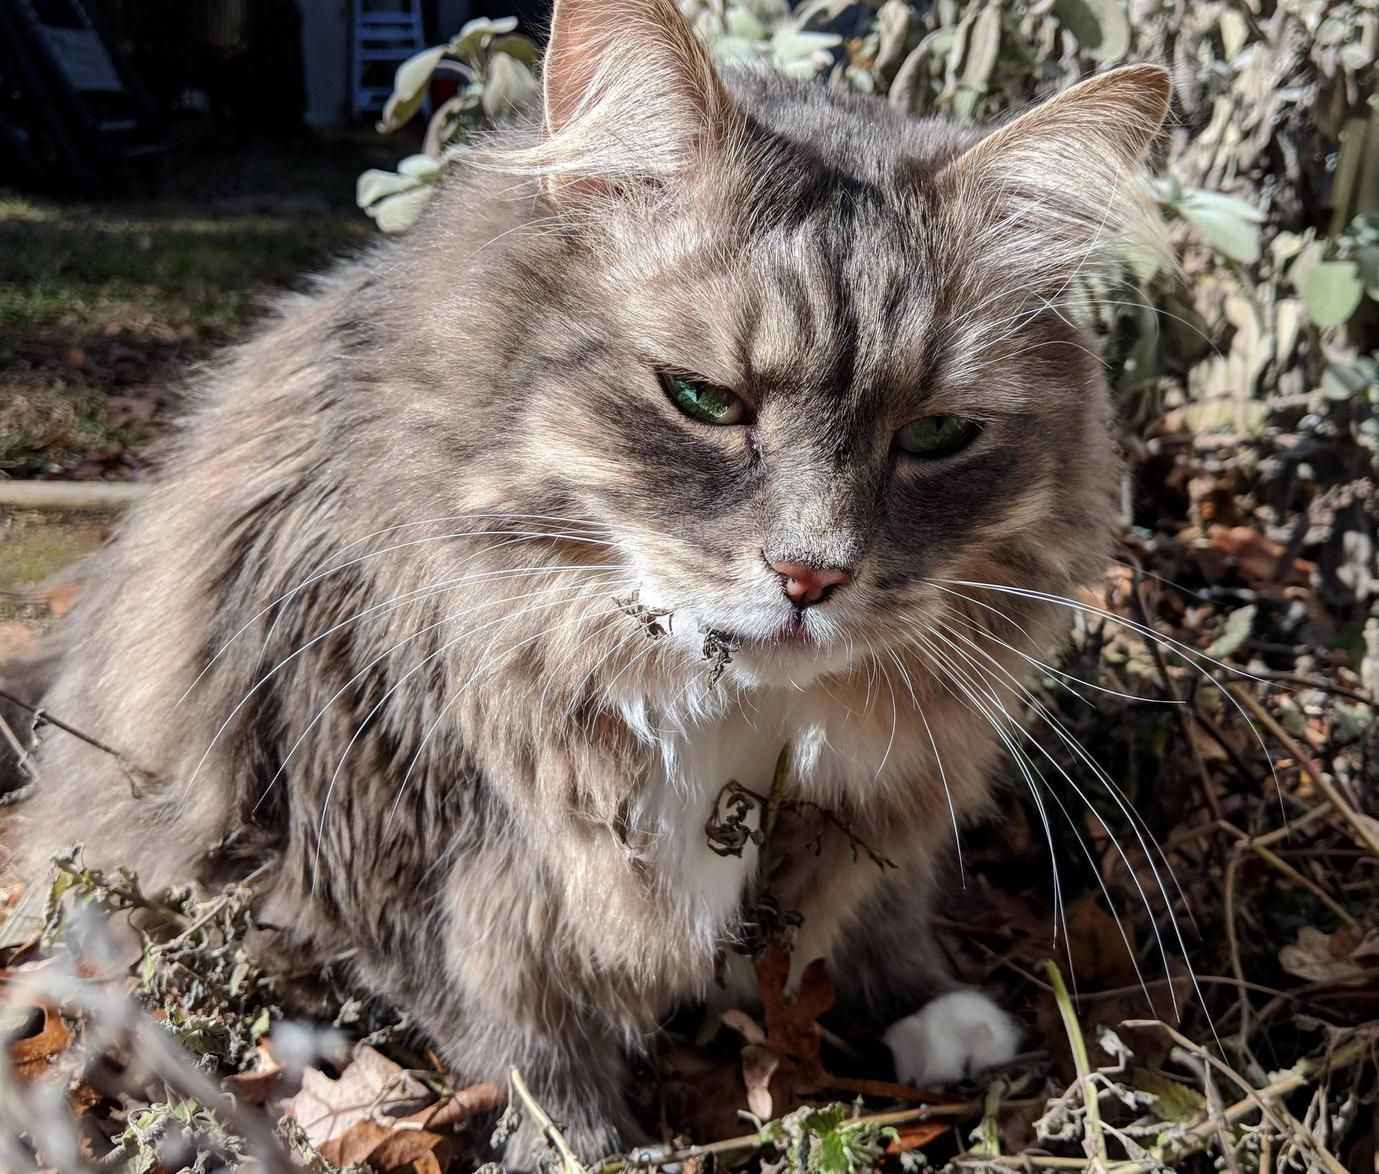 We took jasper outside and he found last years catnip.